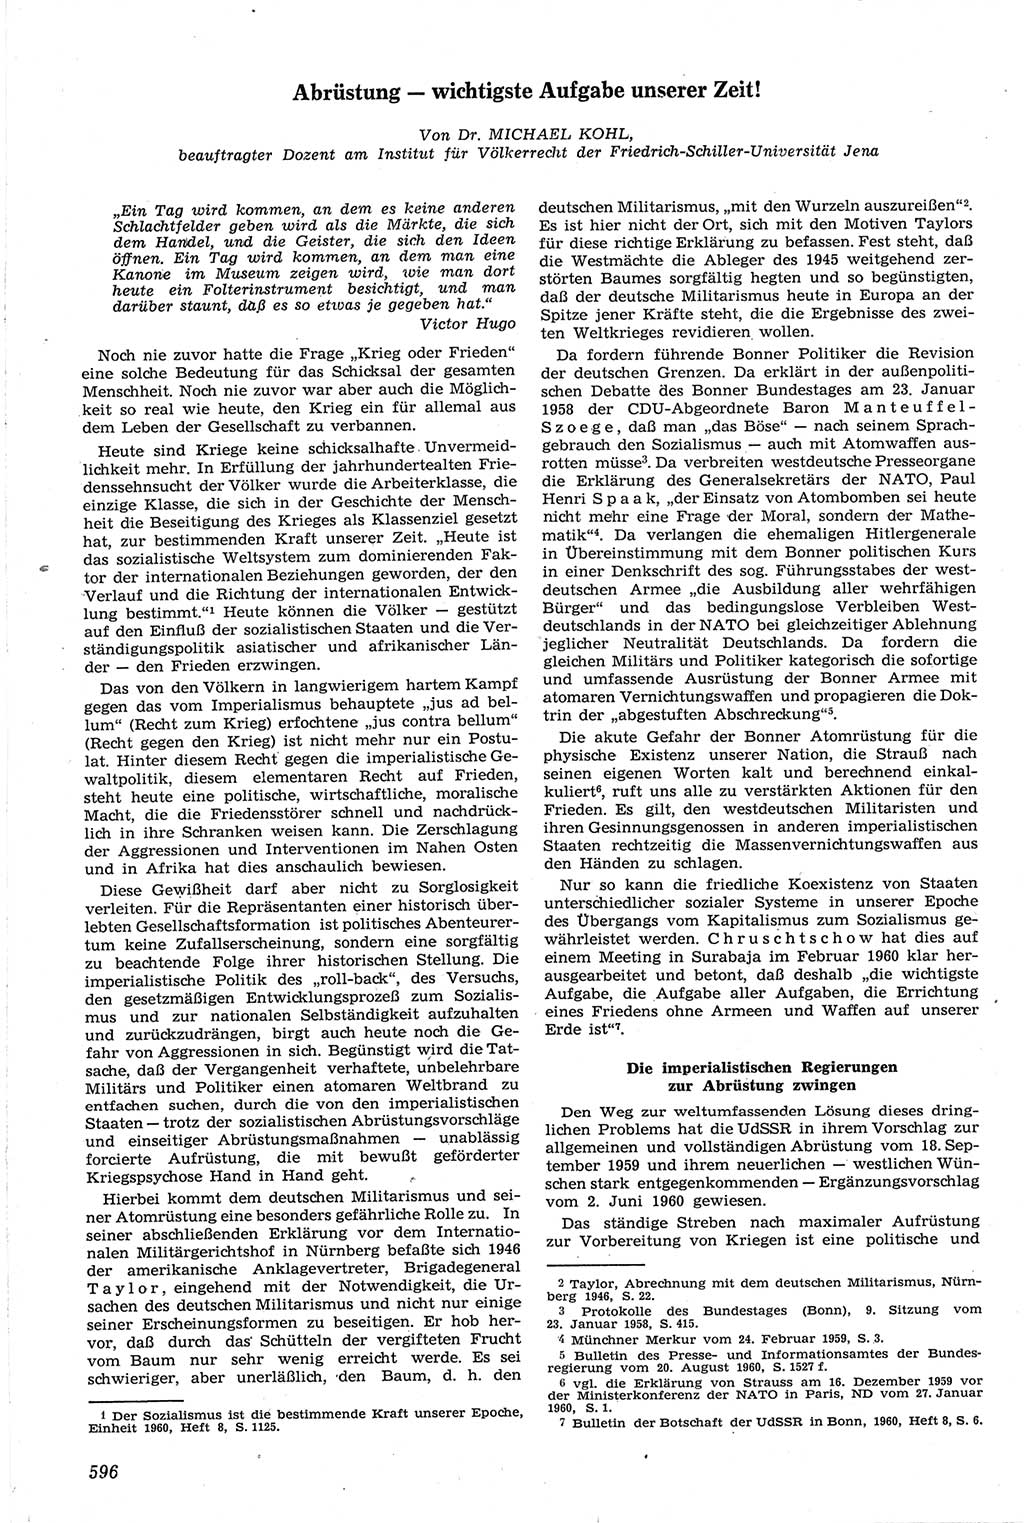 Neue Justiz (NJ), Zeitschrift für Recht und Rechtswissenschaft [Deutsche Demokratische Republik (DDR)], 14. Jahrgang 1960, Seite 596 (NJ DDR 1960, S. 596)